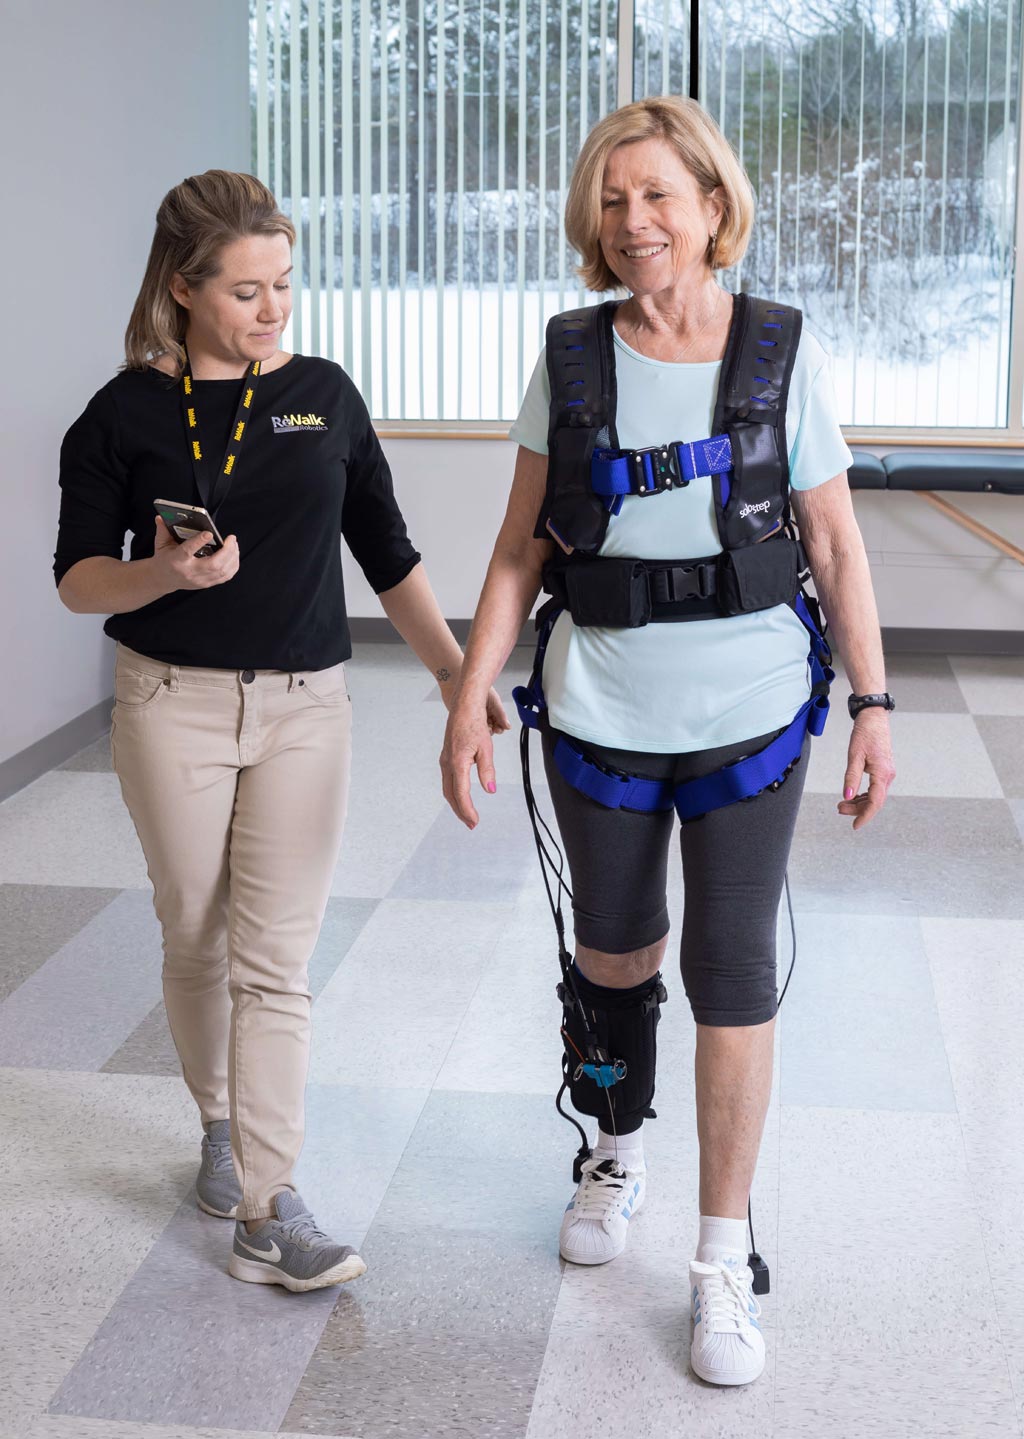 Устройство для тренировки походки помогает реабилитации пациента после перенесенного инсульта (фото любезно предоставлено ReWalk).